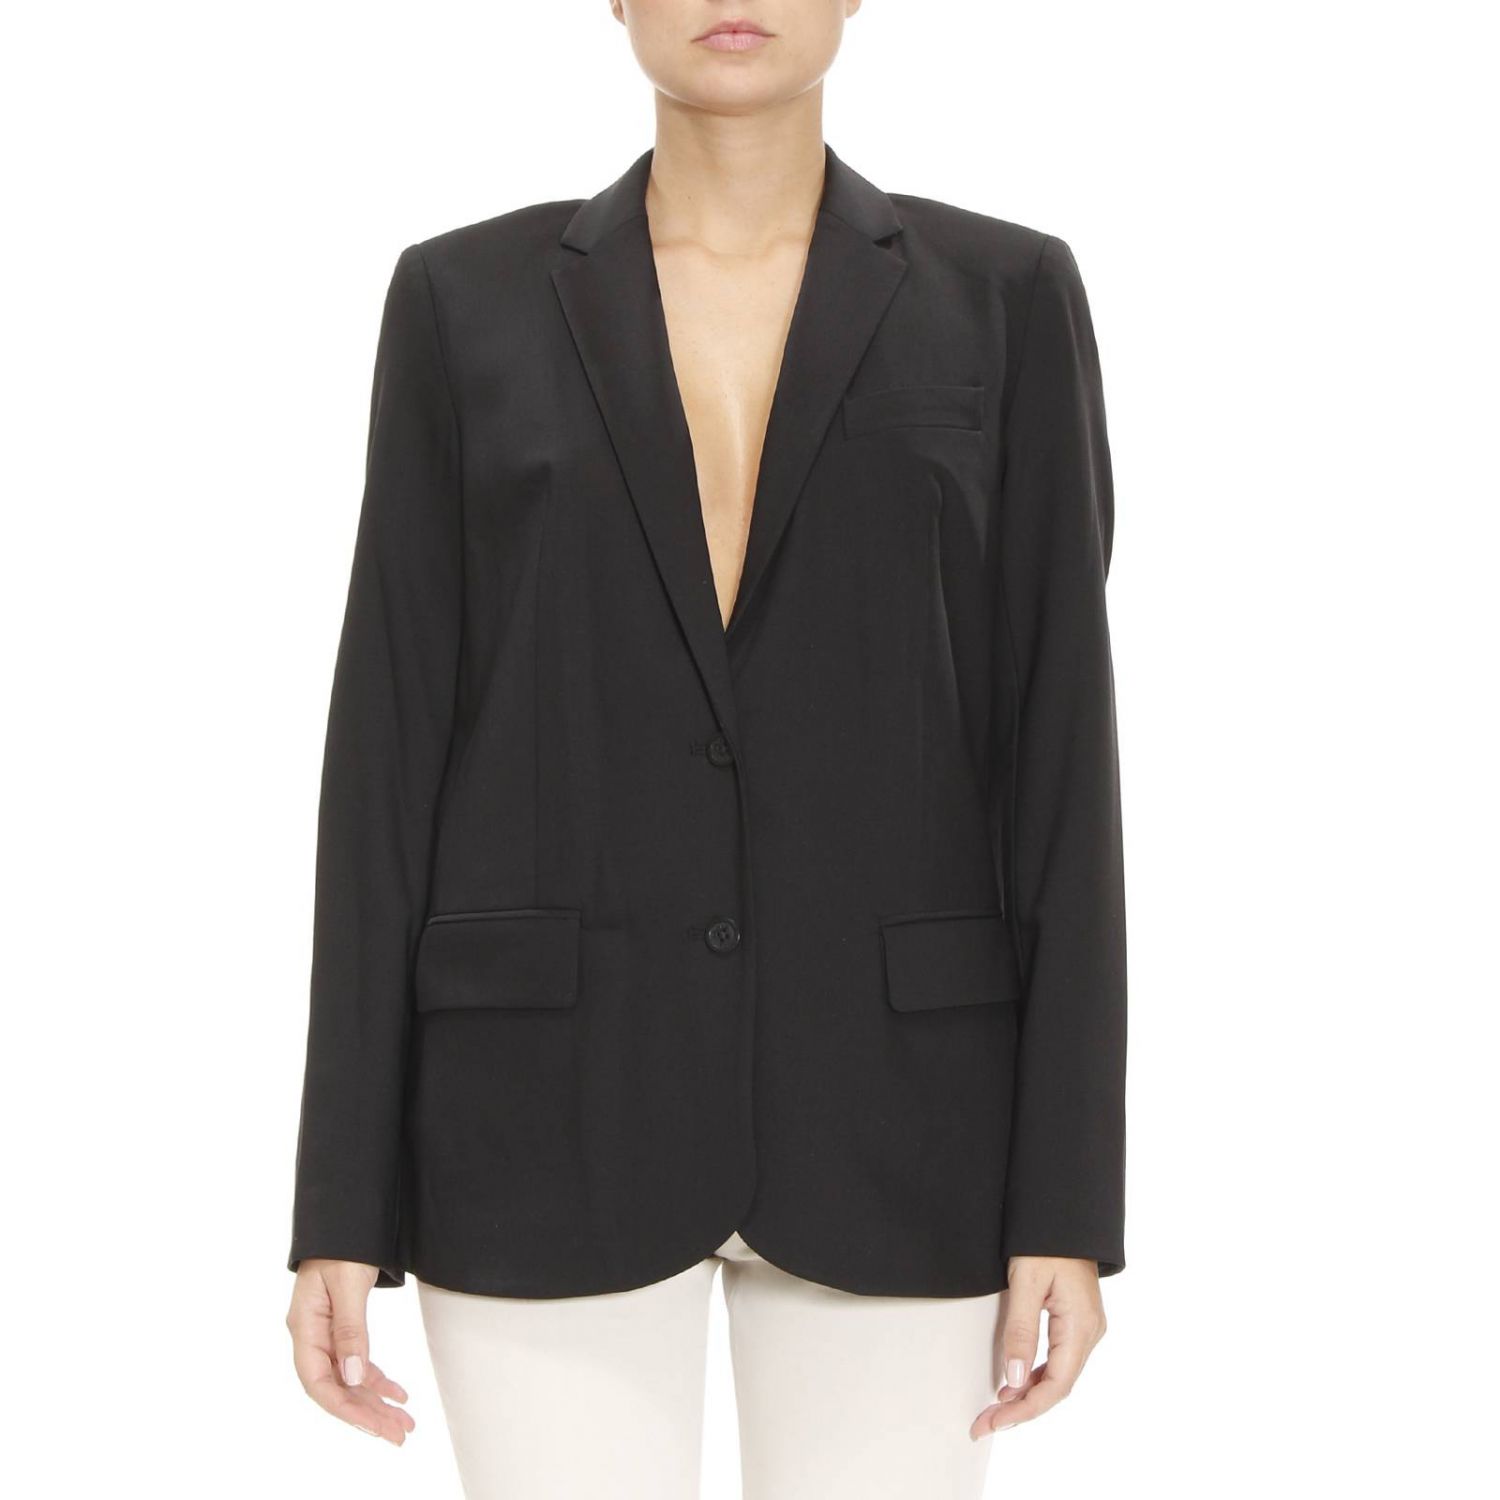 Michael Michael Kors Outlet: Suit jacket woman | Blazer Michael Michael ...